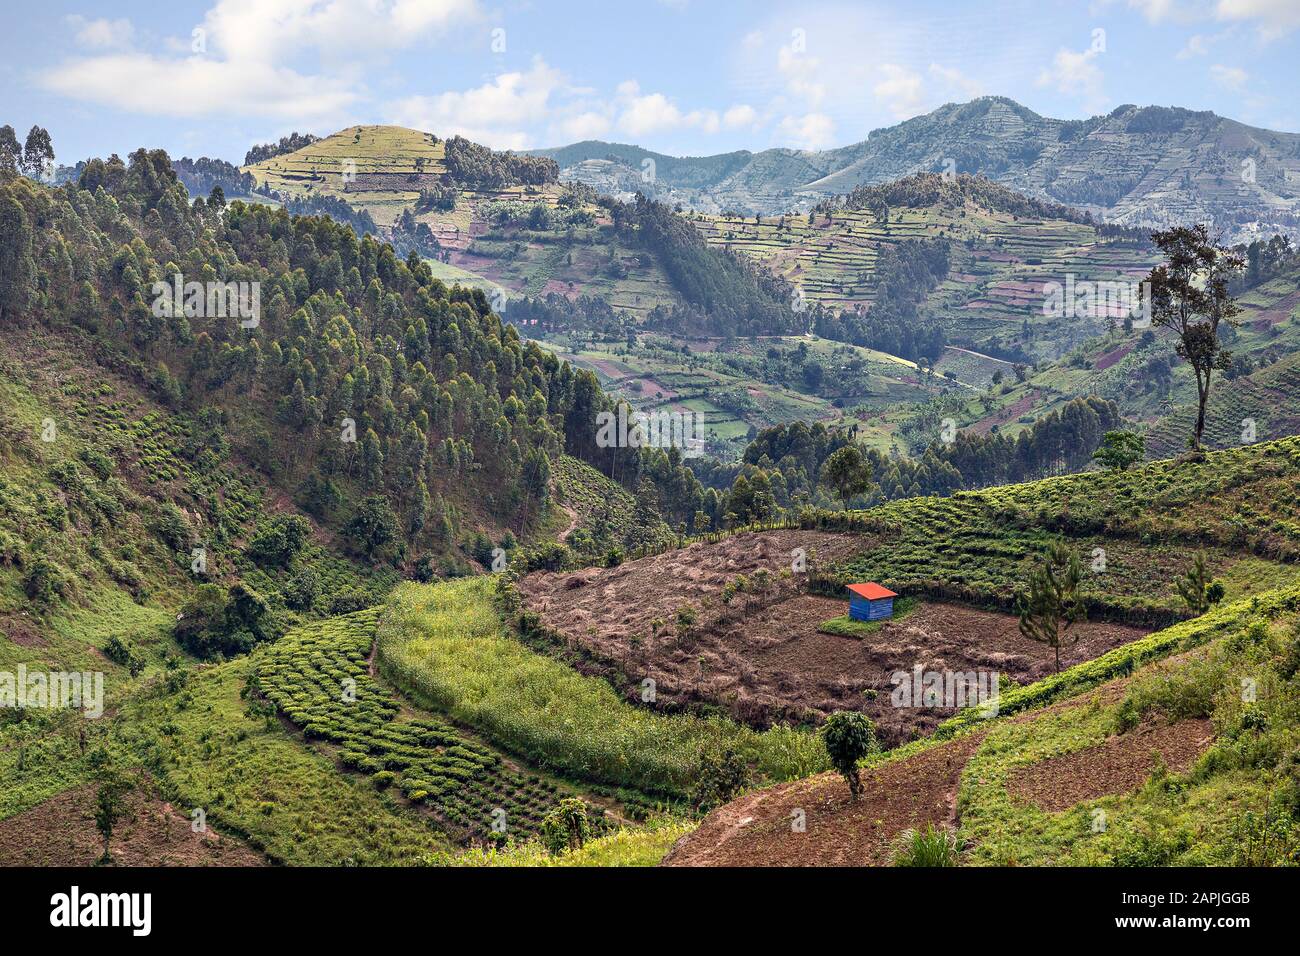 Plantation de thé et terrasses agricoles en Ouganda, Afrique Banque D'Images